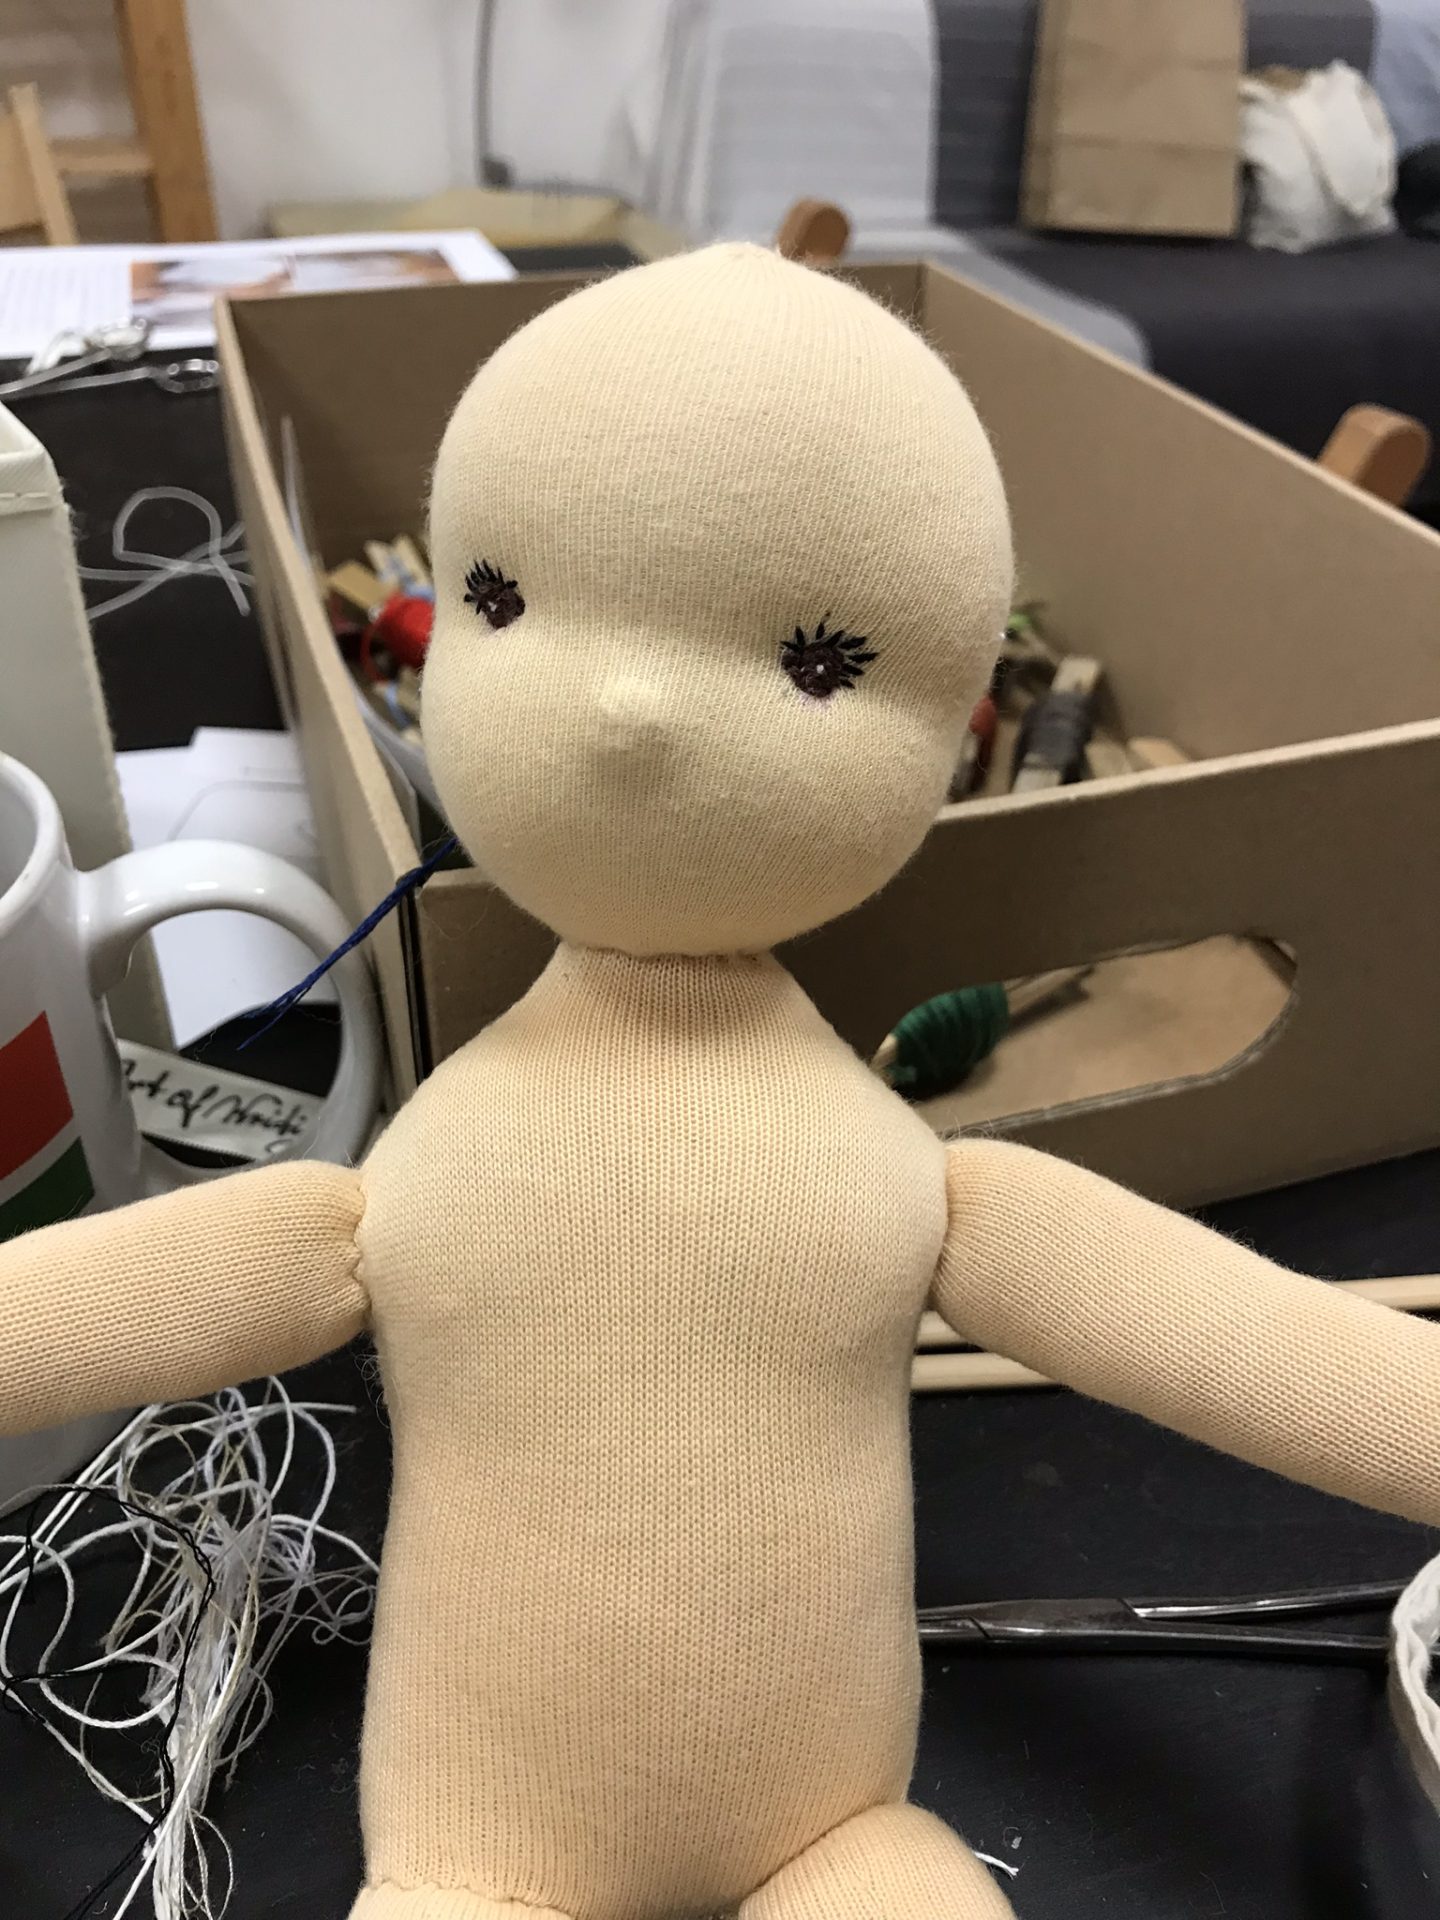 rozpracovaná panenka na kurzu šití panenek, ohlédnutí za listopadovým kurzem 2018